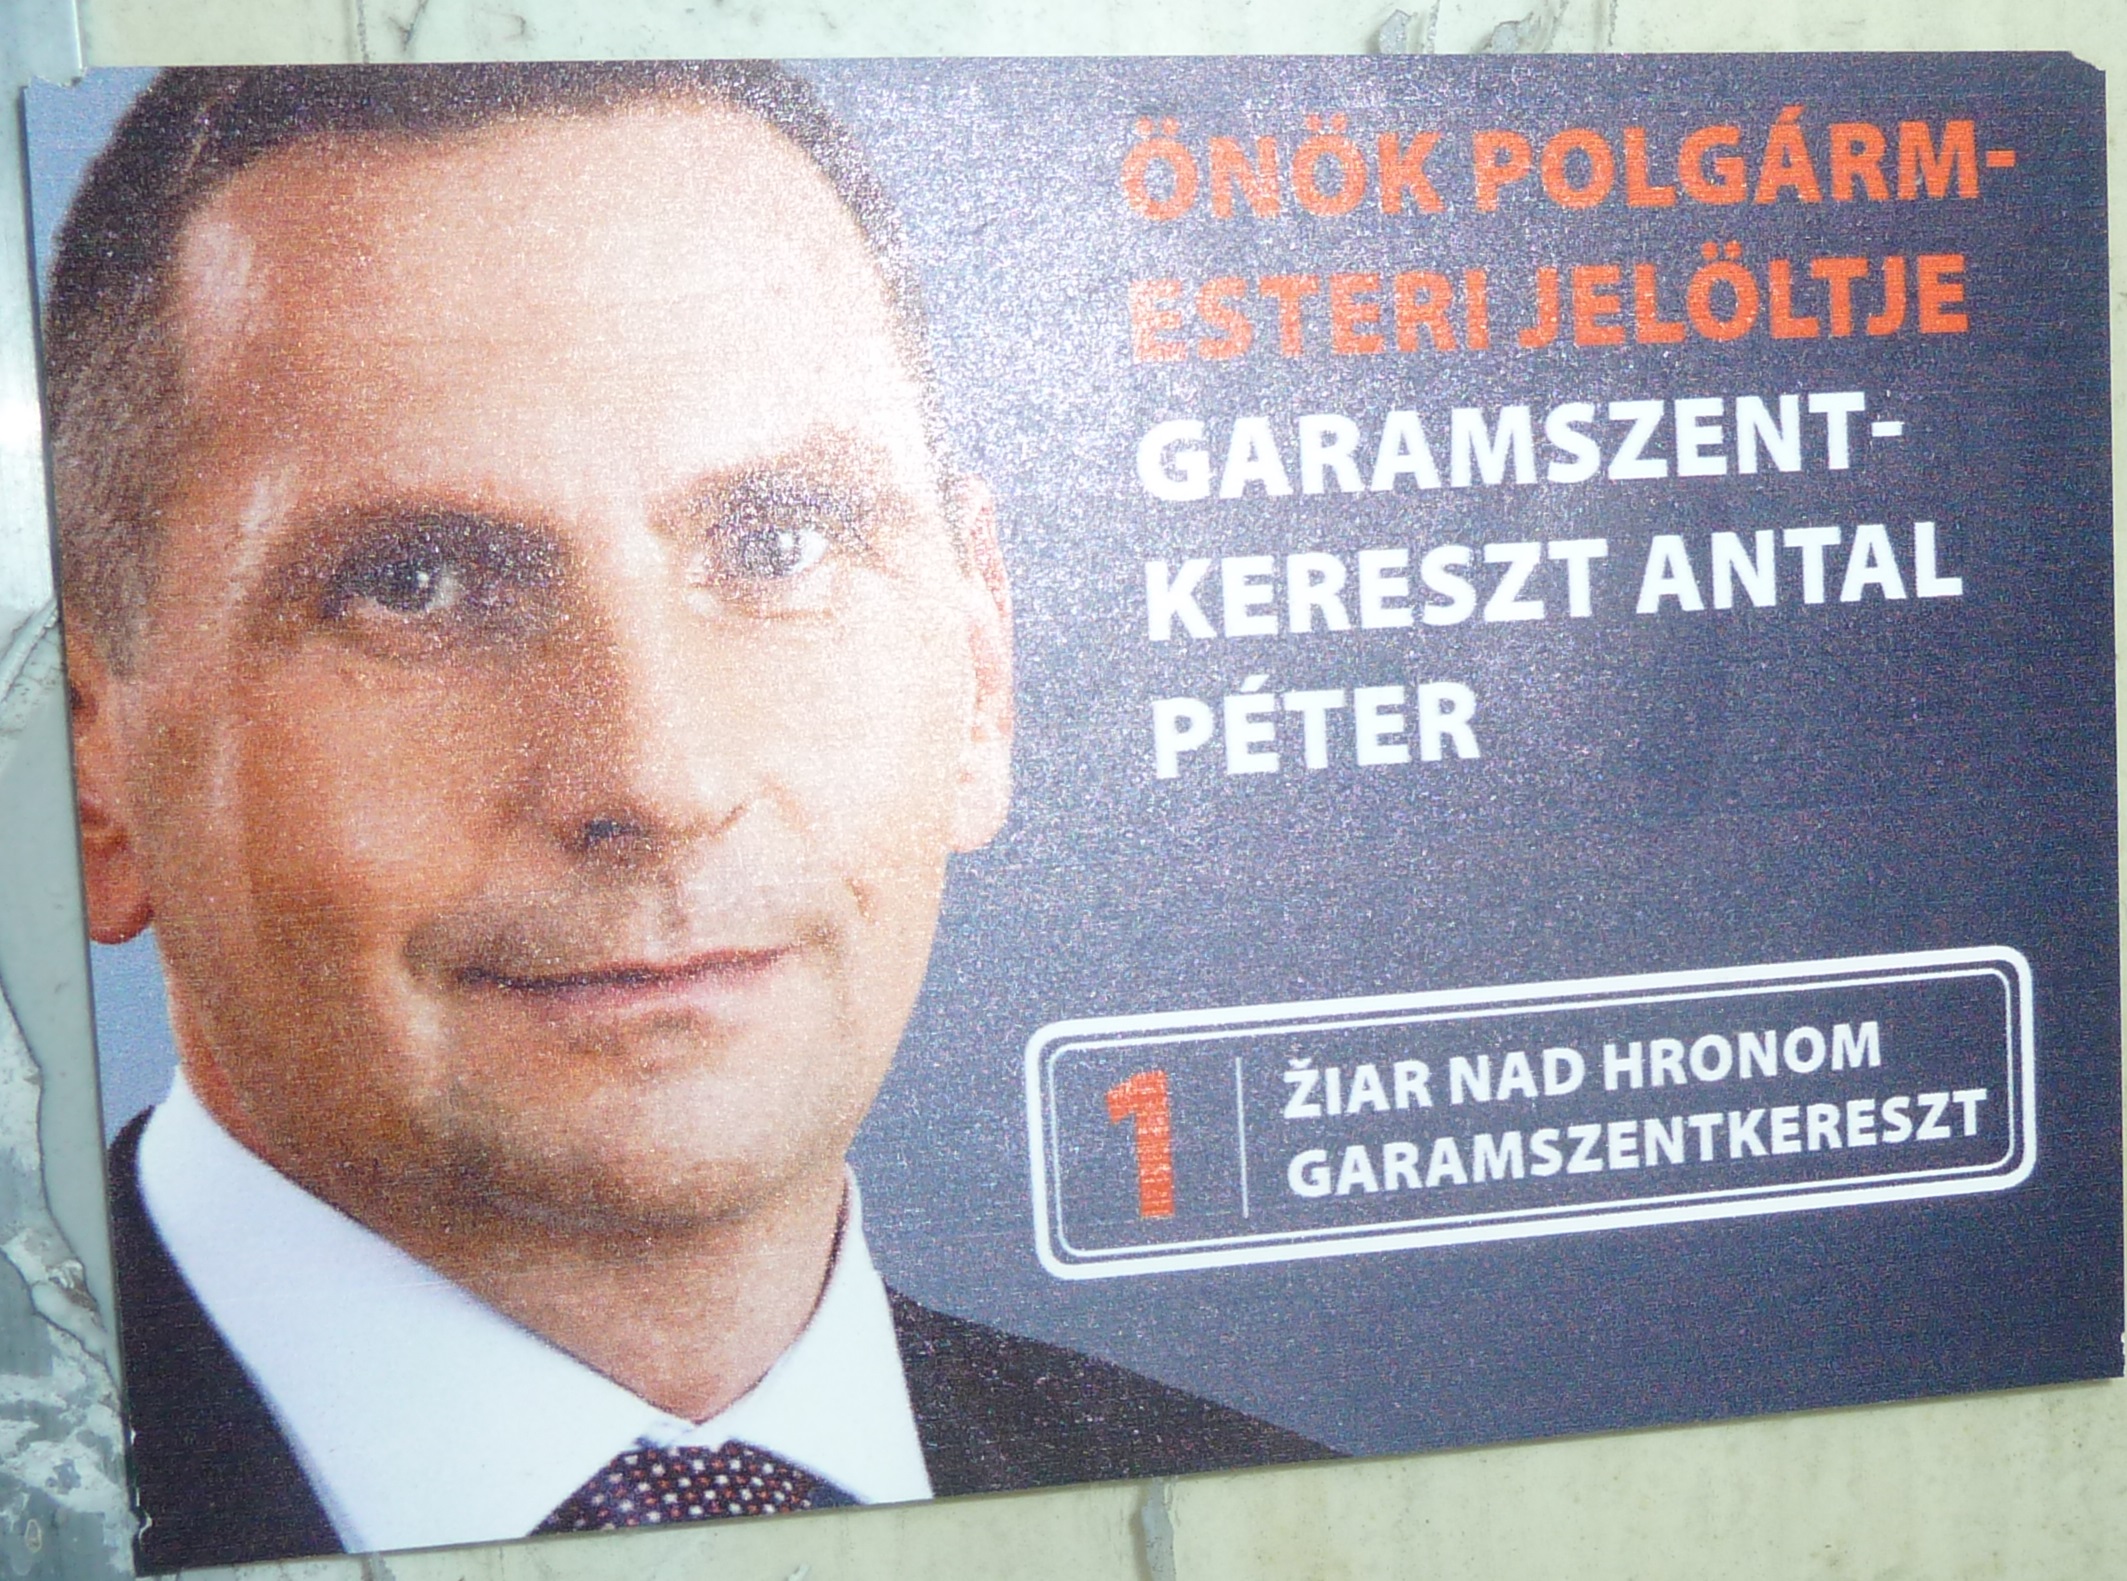 Obrázok 1: Predvolebný plagát Pétra Antala, ktorý kampaňuje po maďarsky.